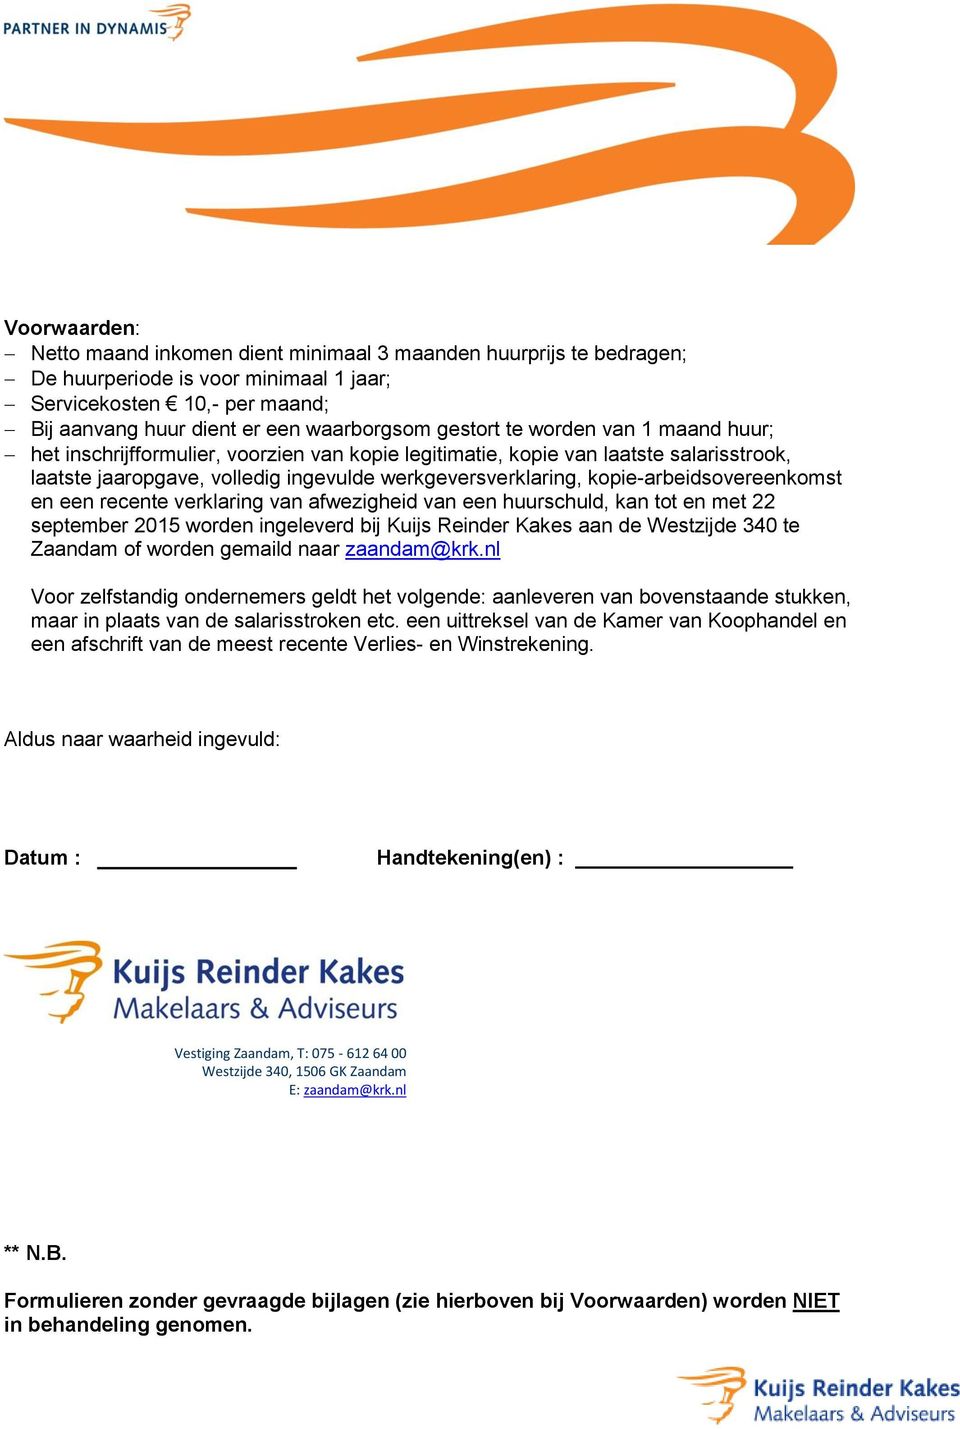 kopie-arbeidsovereenkomst en een recente verklaring van afwezigheid van een huurschuld, kan tot en met 22 september 2015 worden ingeleverd bij Kuijs Reinder Kakes aan de Westzijde 340 te Zaandam of